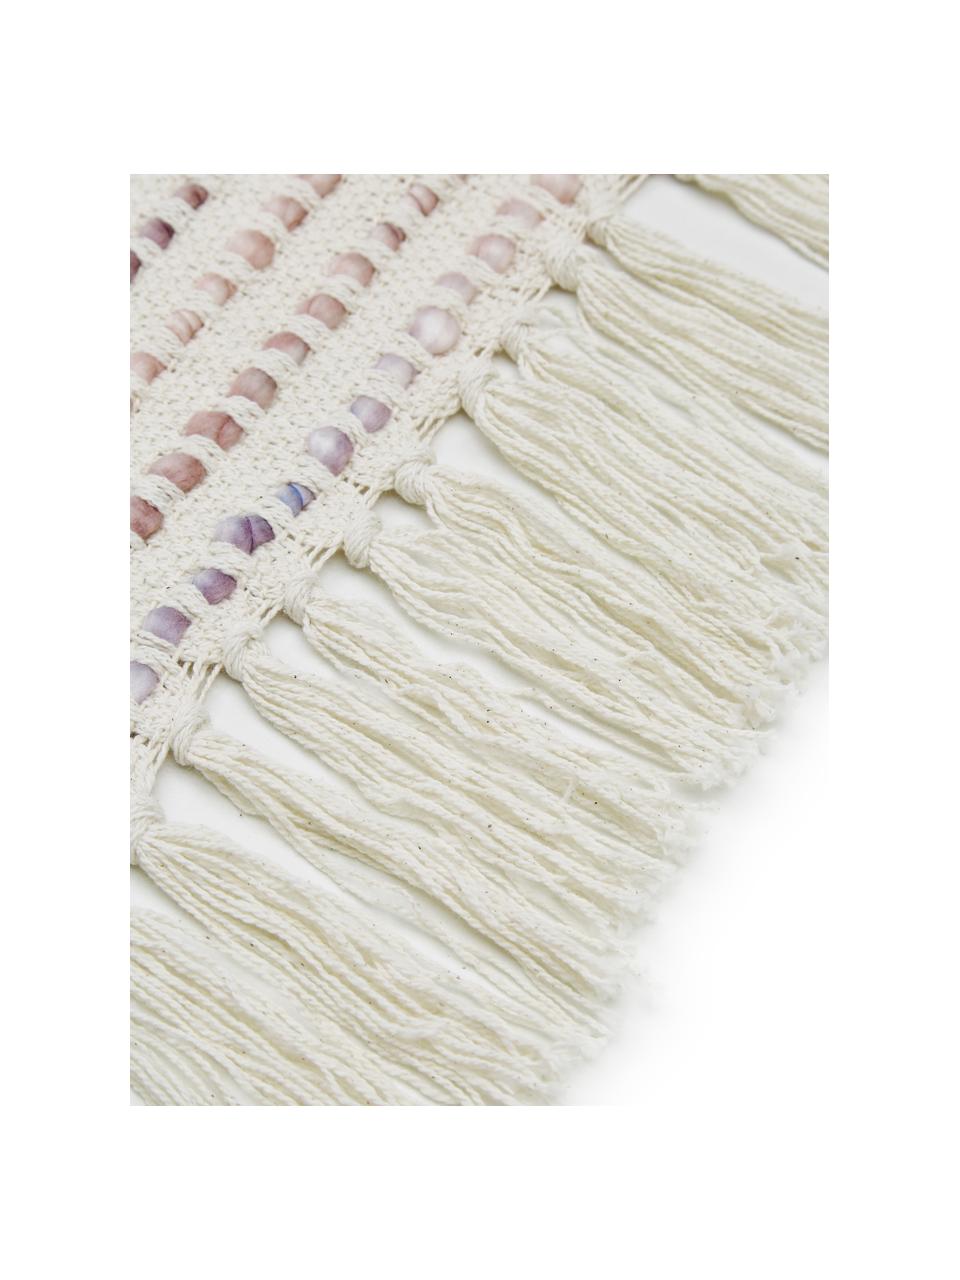 Baumwolldecke Kampala mit strukturierter Oberfläche, 70% Baumwolle, 30% Arcyl, Cremefarben, Rosatöne, 130 x 170 cm